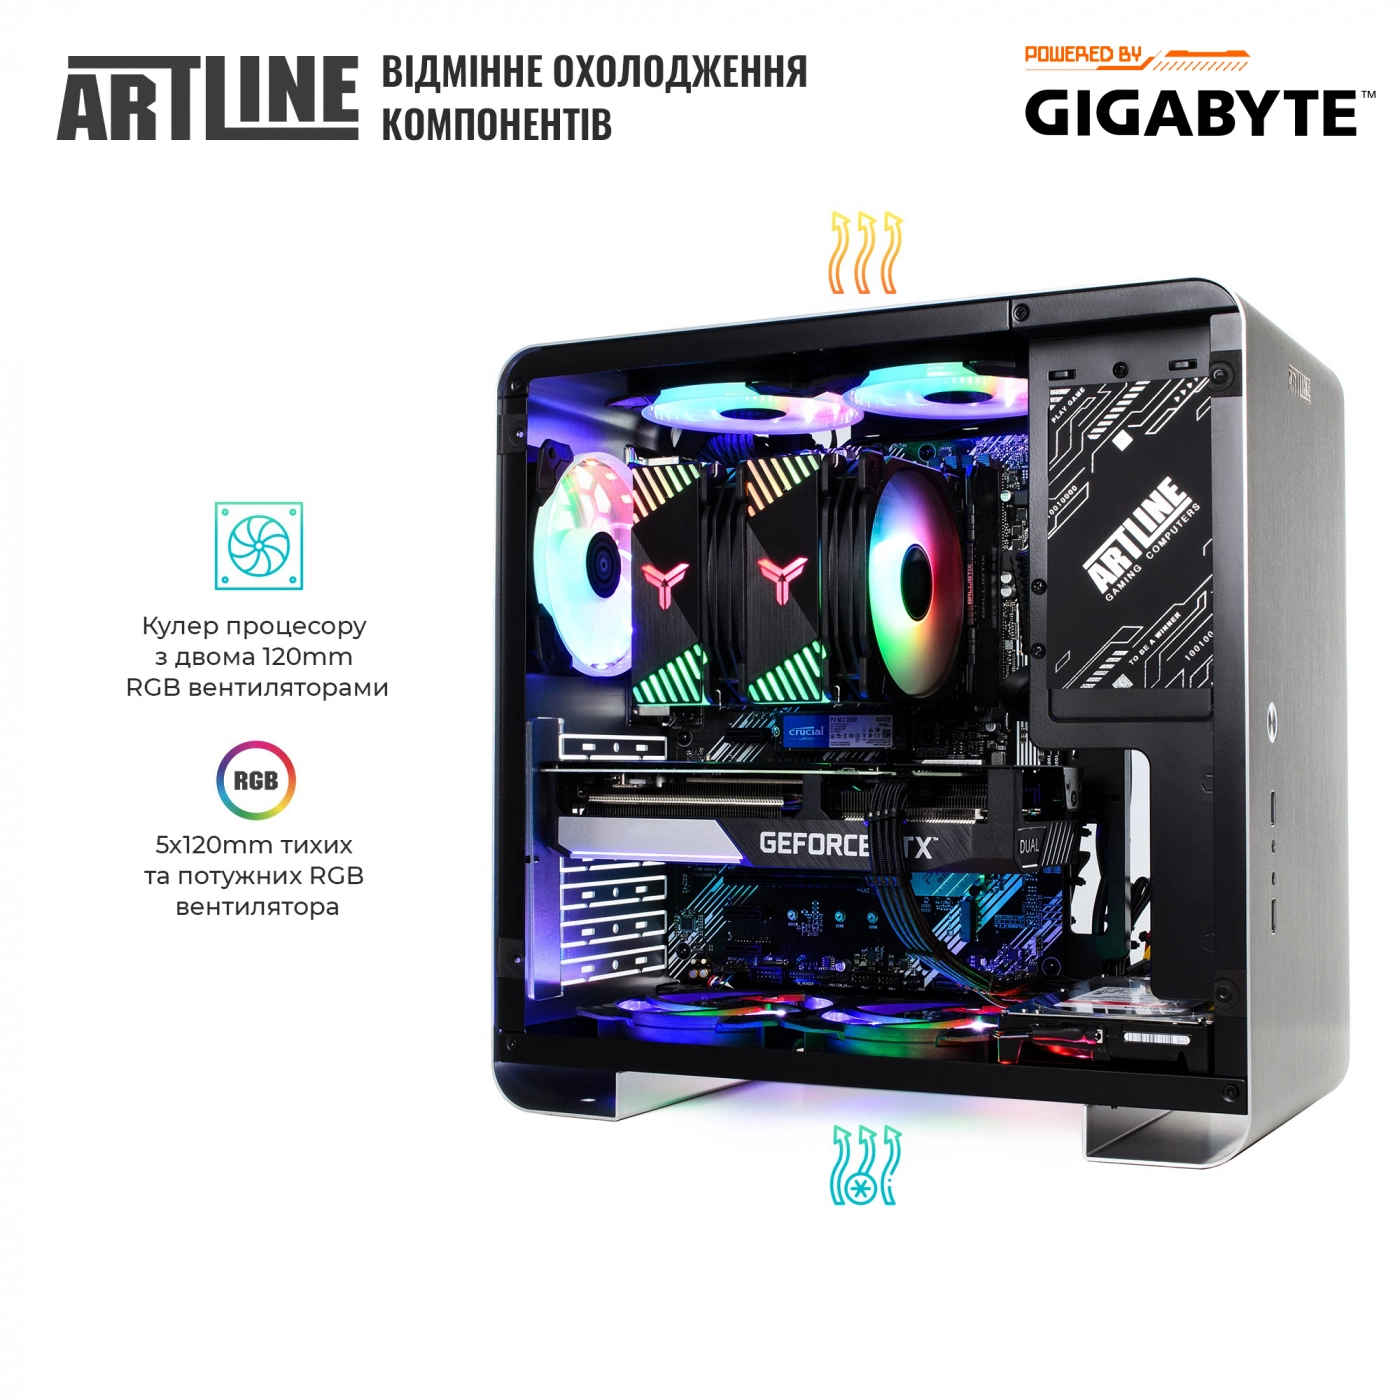 Купить Компьютер ARTLINE Gaming X55v35 - фото 9